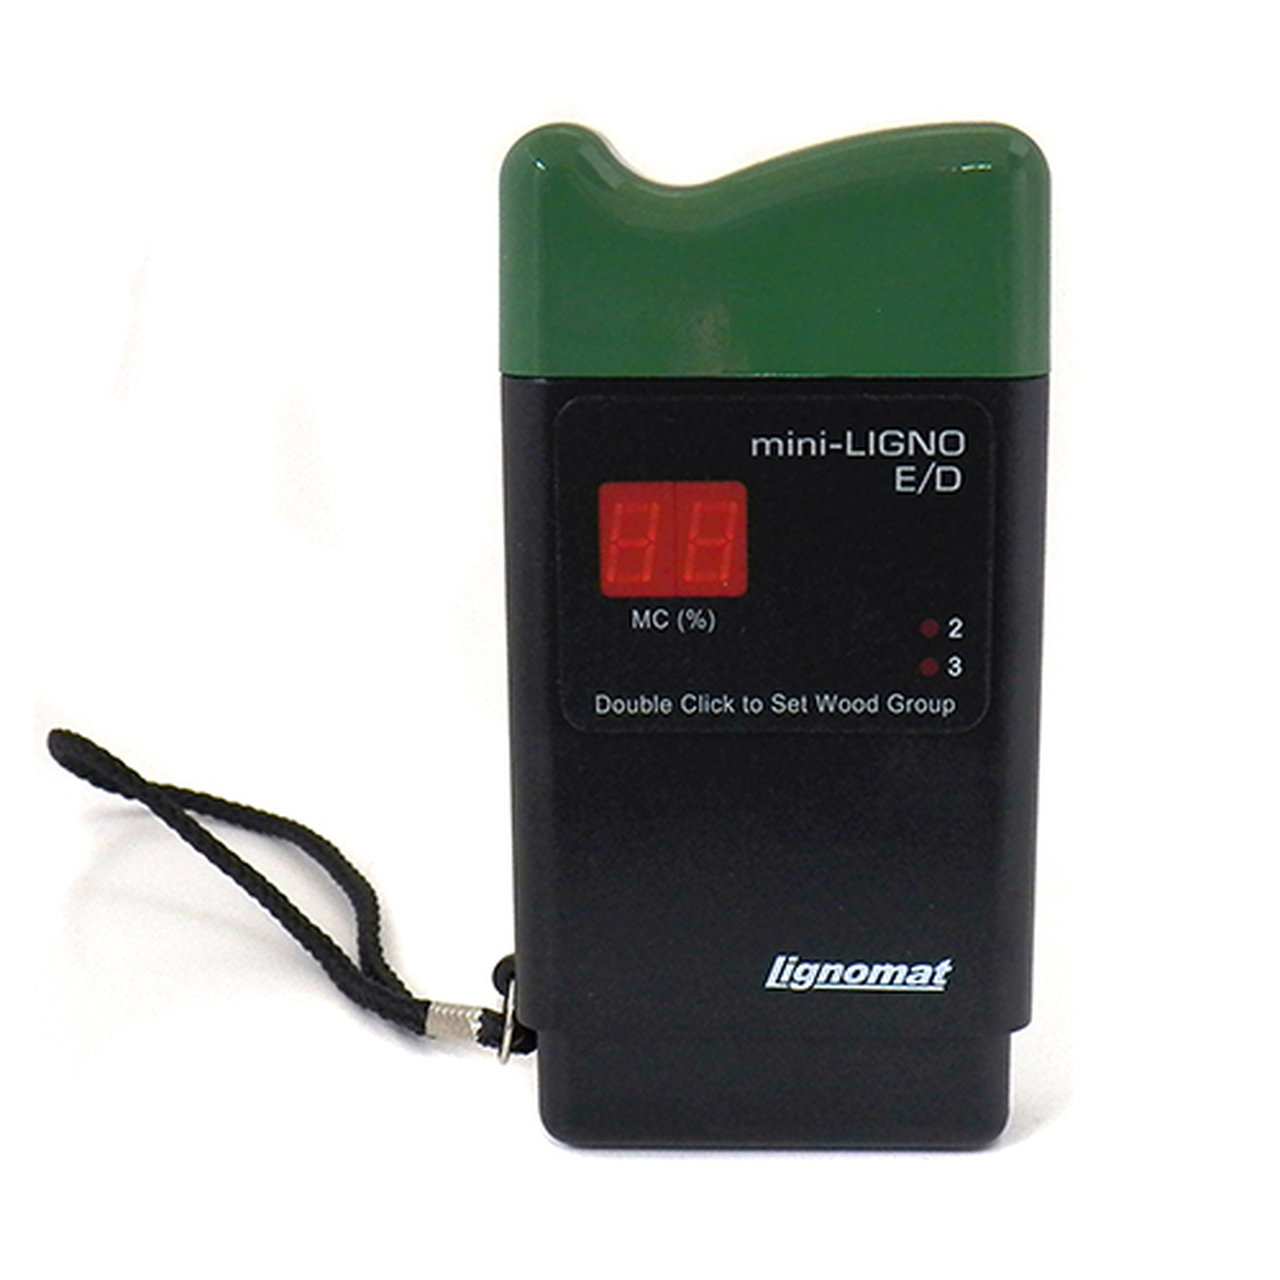 Lignomat's mini-Ligno E/D, Wood Moisture Meter